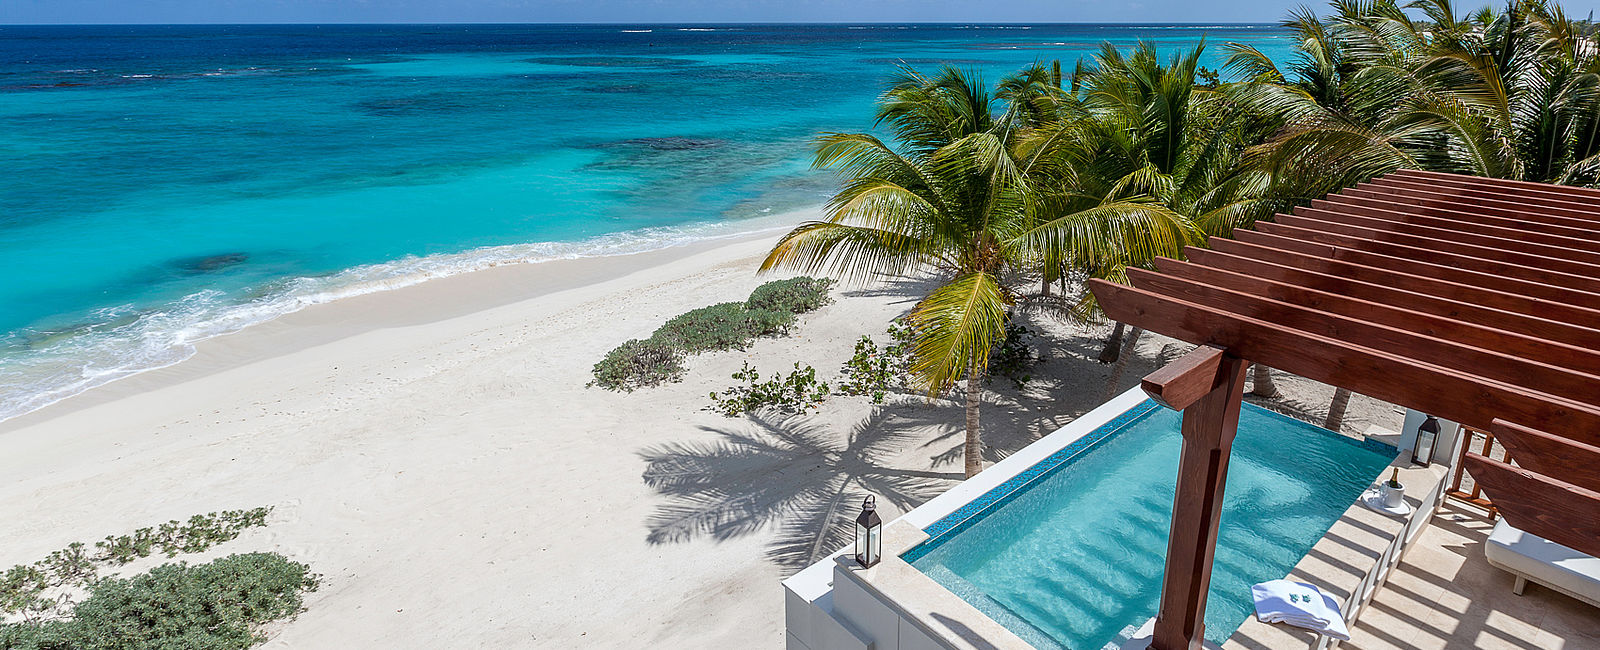 HOTELTEST
 Zemi Beach House, Anguilla 
 Ein Modernes Boutique-Resort 